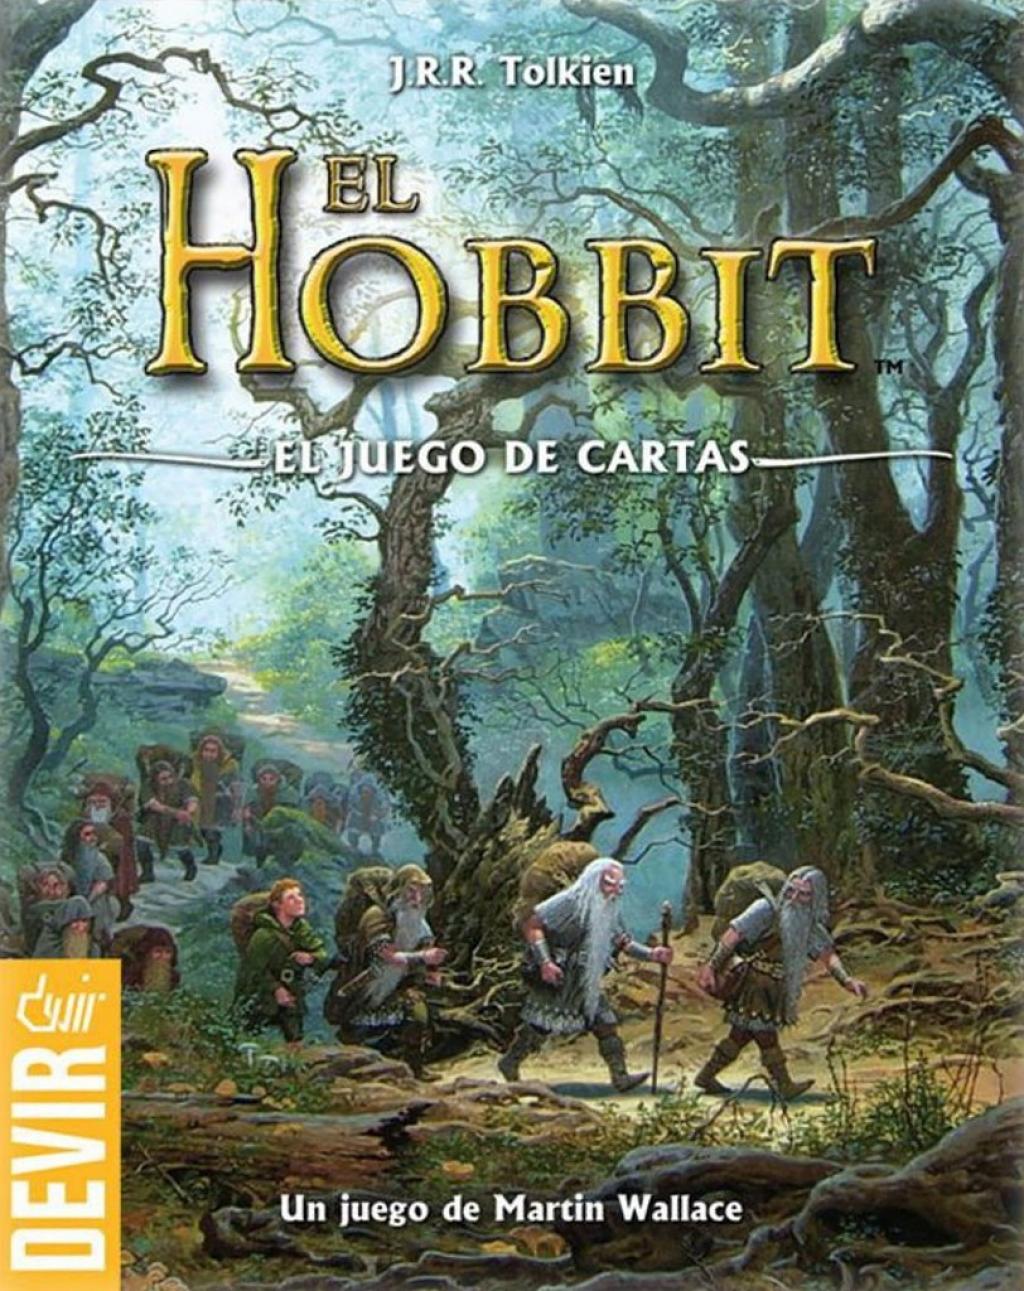 https://www.ludonauta.es/files/ludico/juegos-mesas/1024x0-juego-mesa-el-hobbit-el-juego-de-cartas-2012-356649324.jpg